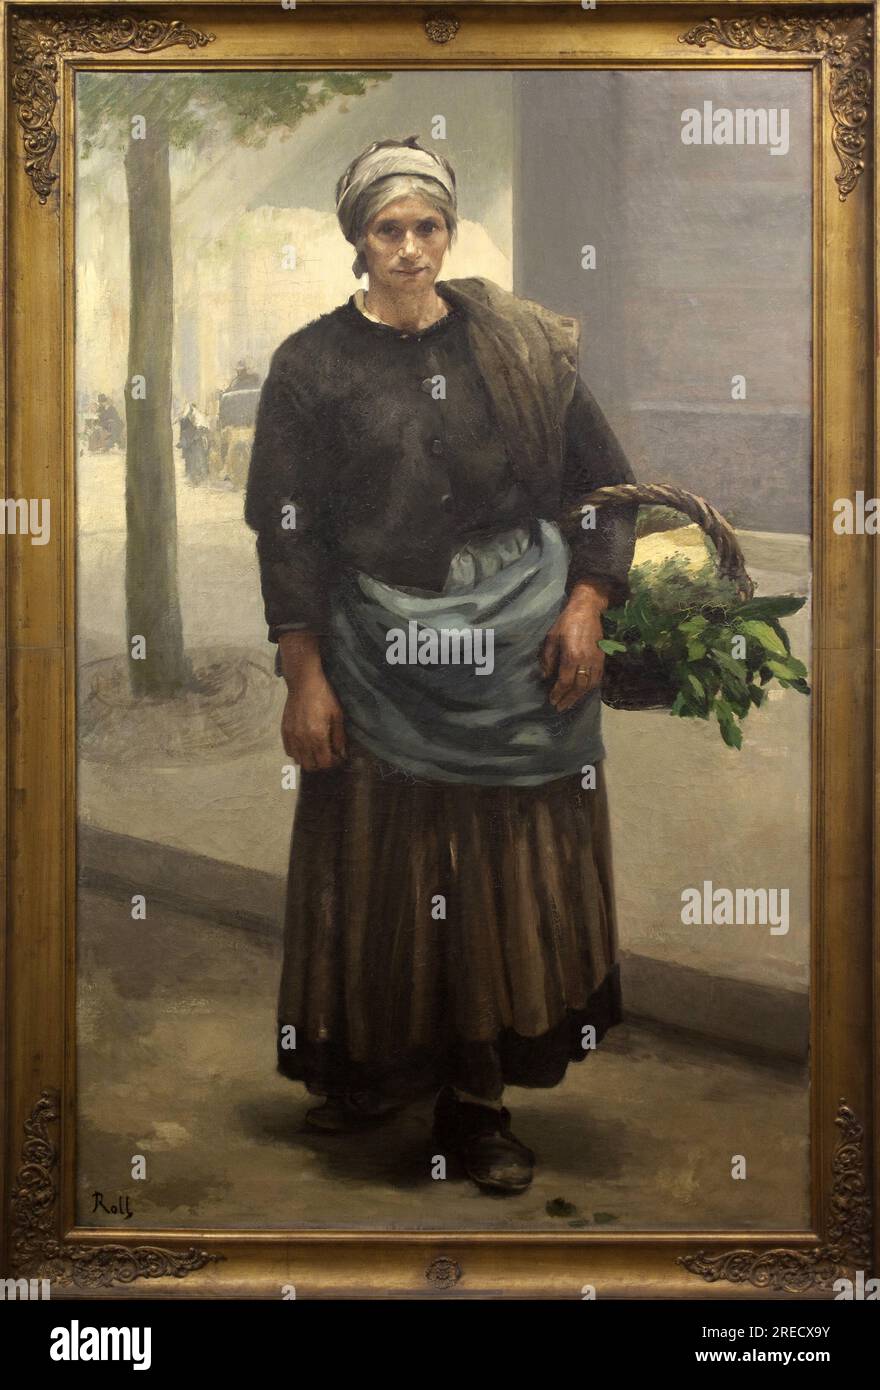 Marianne Offrey, crieuse de vert. Peinture de Alfred Roll (1846-1919), huile sur toile, avant 1885. Musée des Beaux Arts de Pau. Banque D'Images